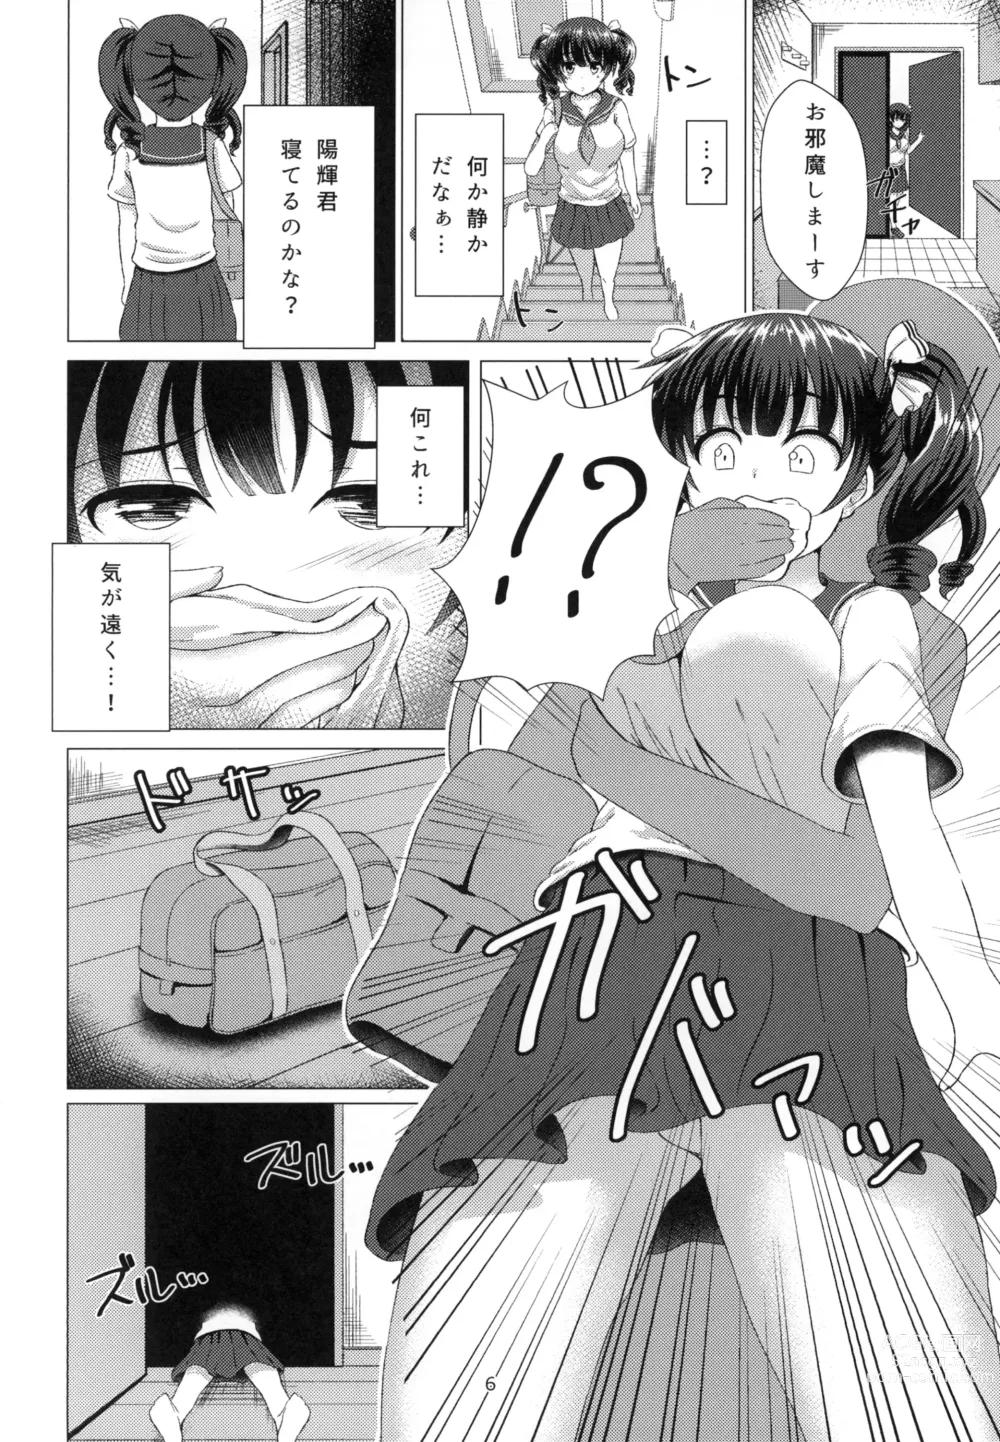 Page 6 of doujinshi Yuganda Koigokoro